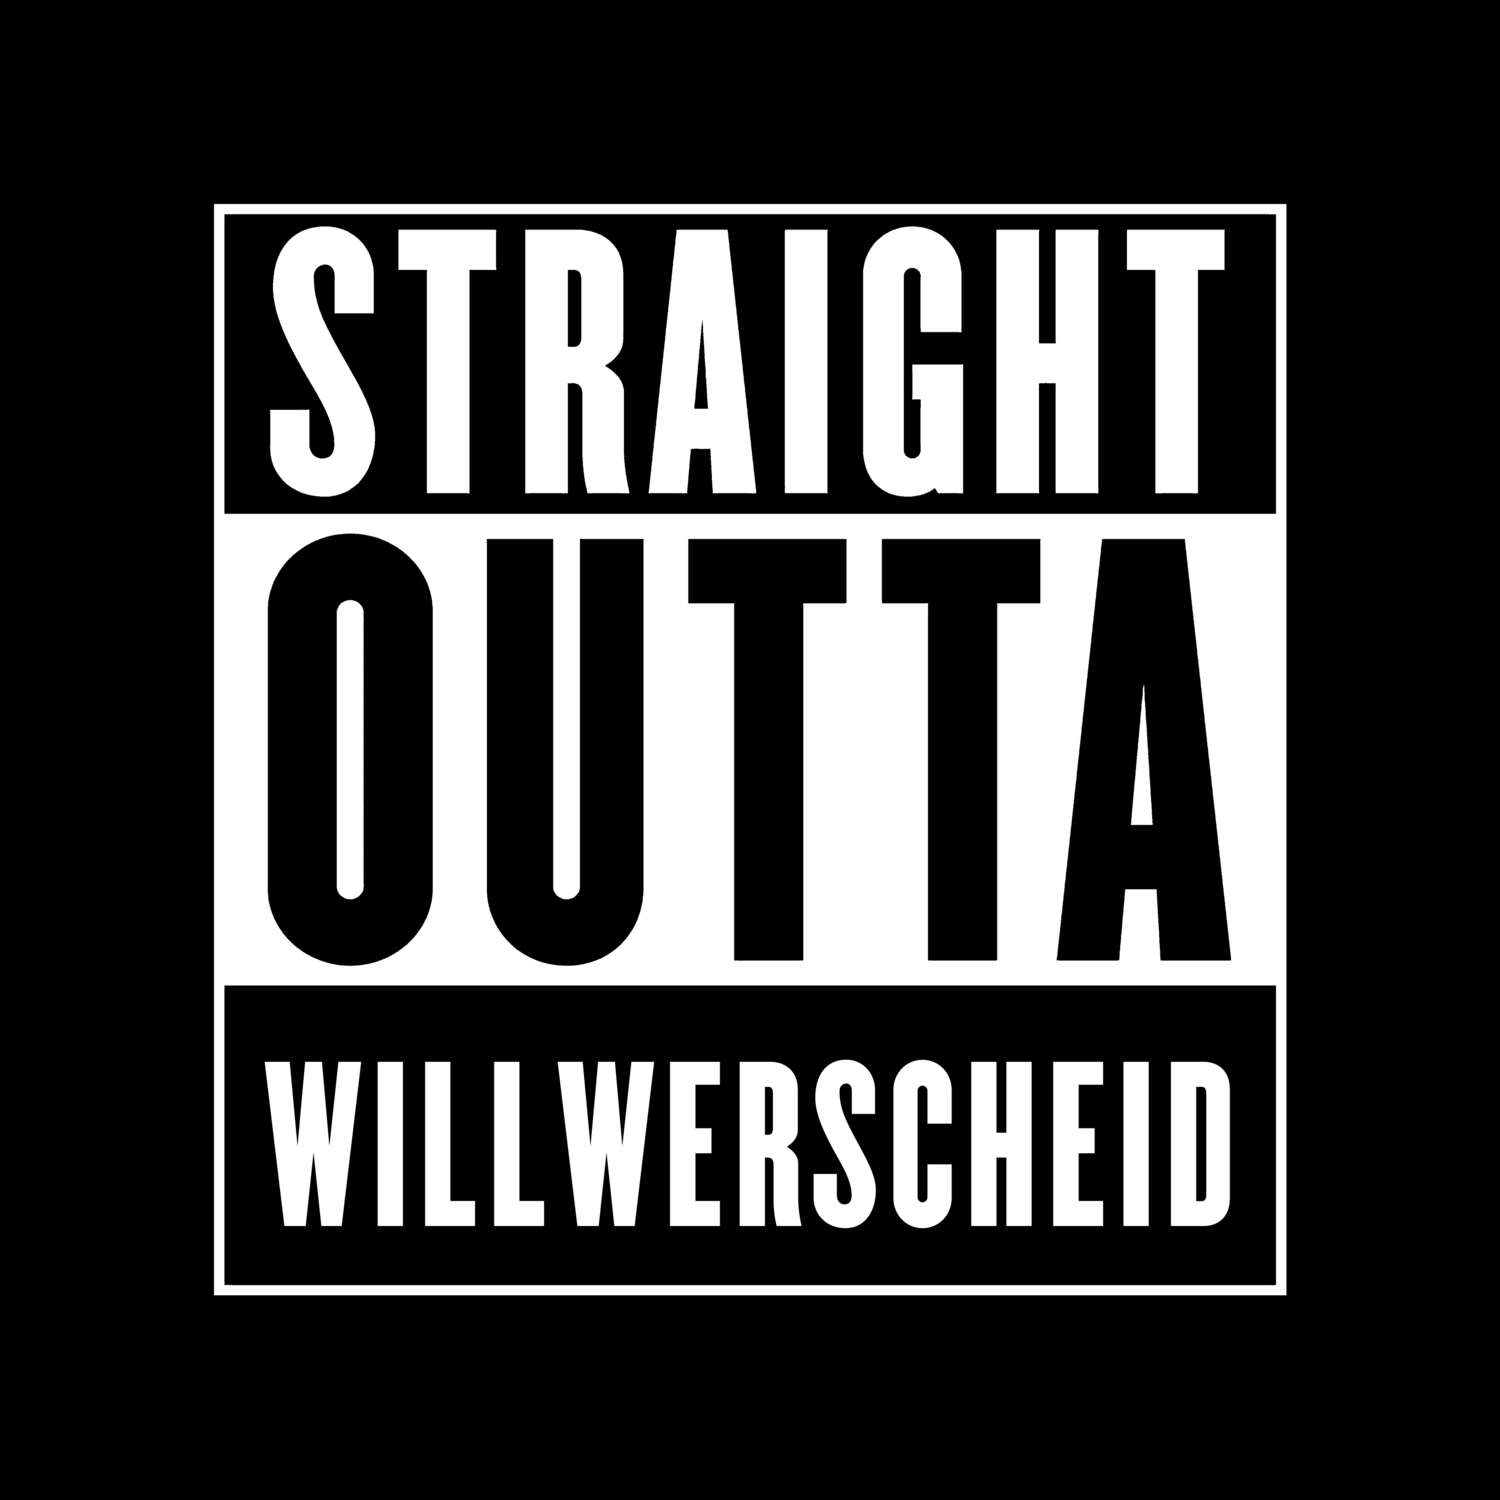 Willwerscheid T-Shirt »Straight Outta«